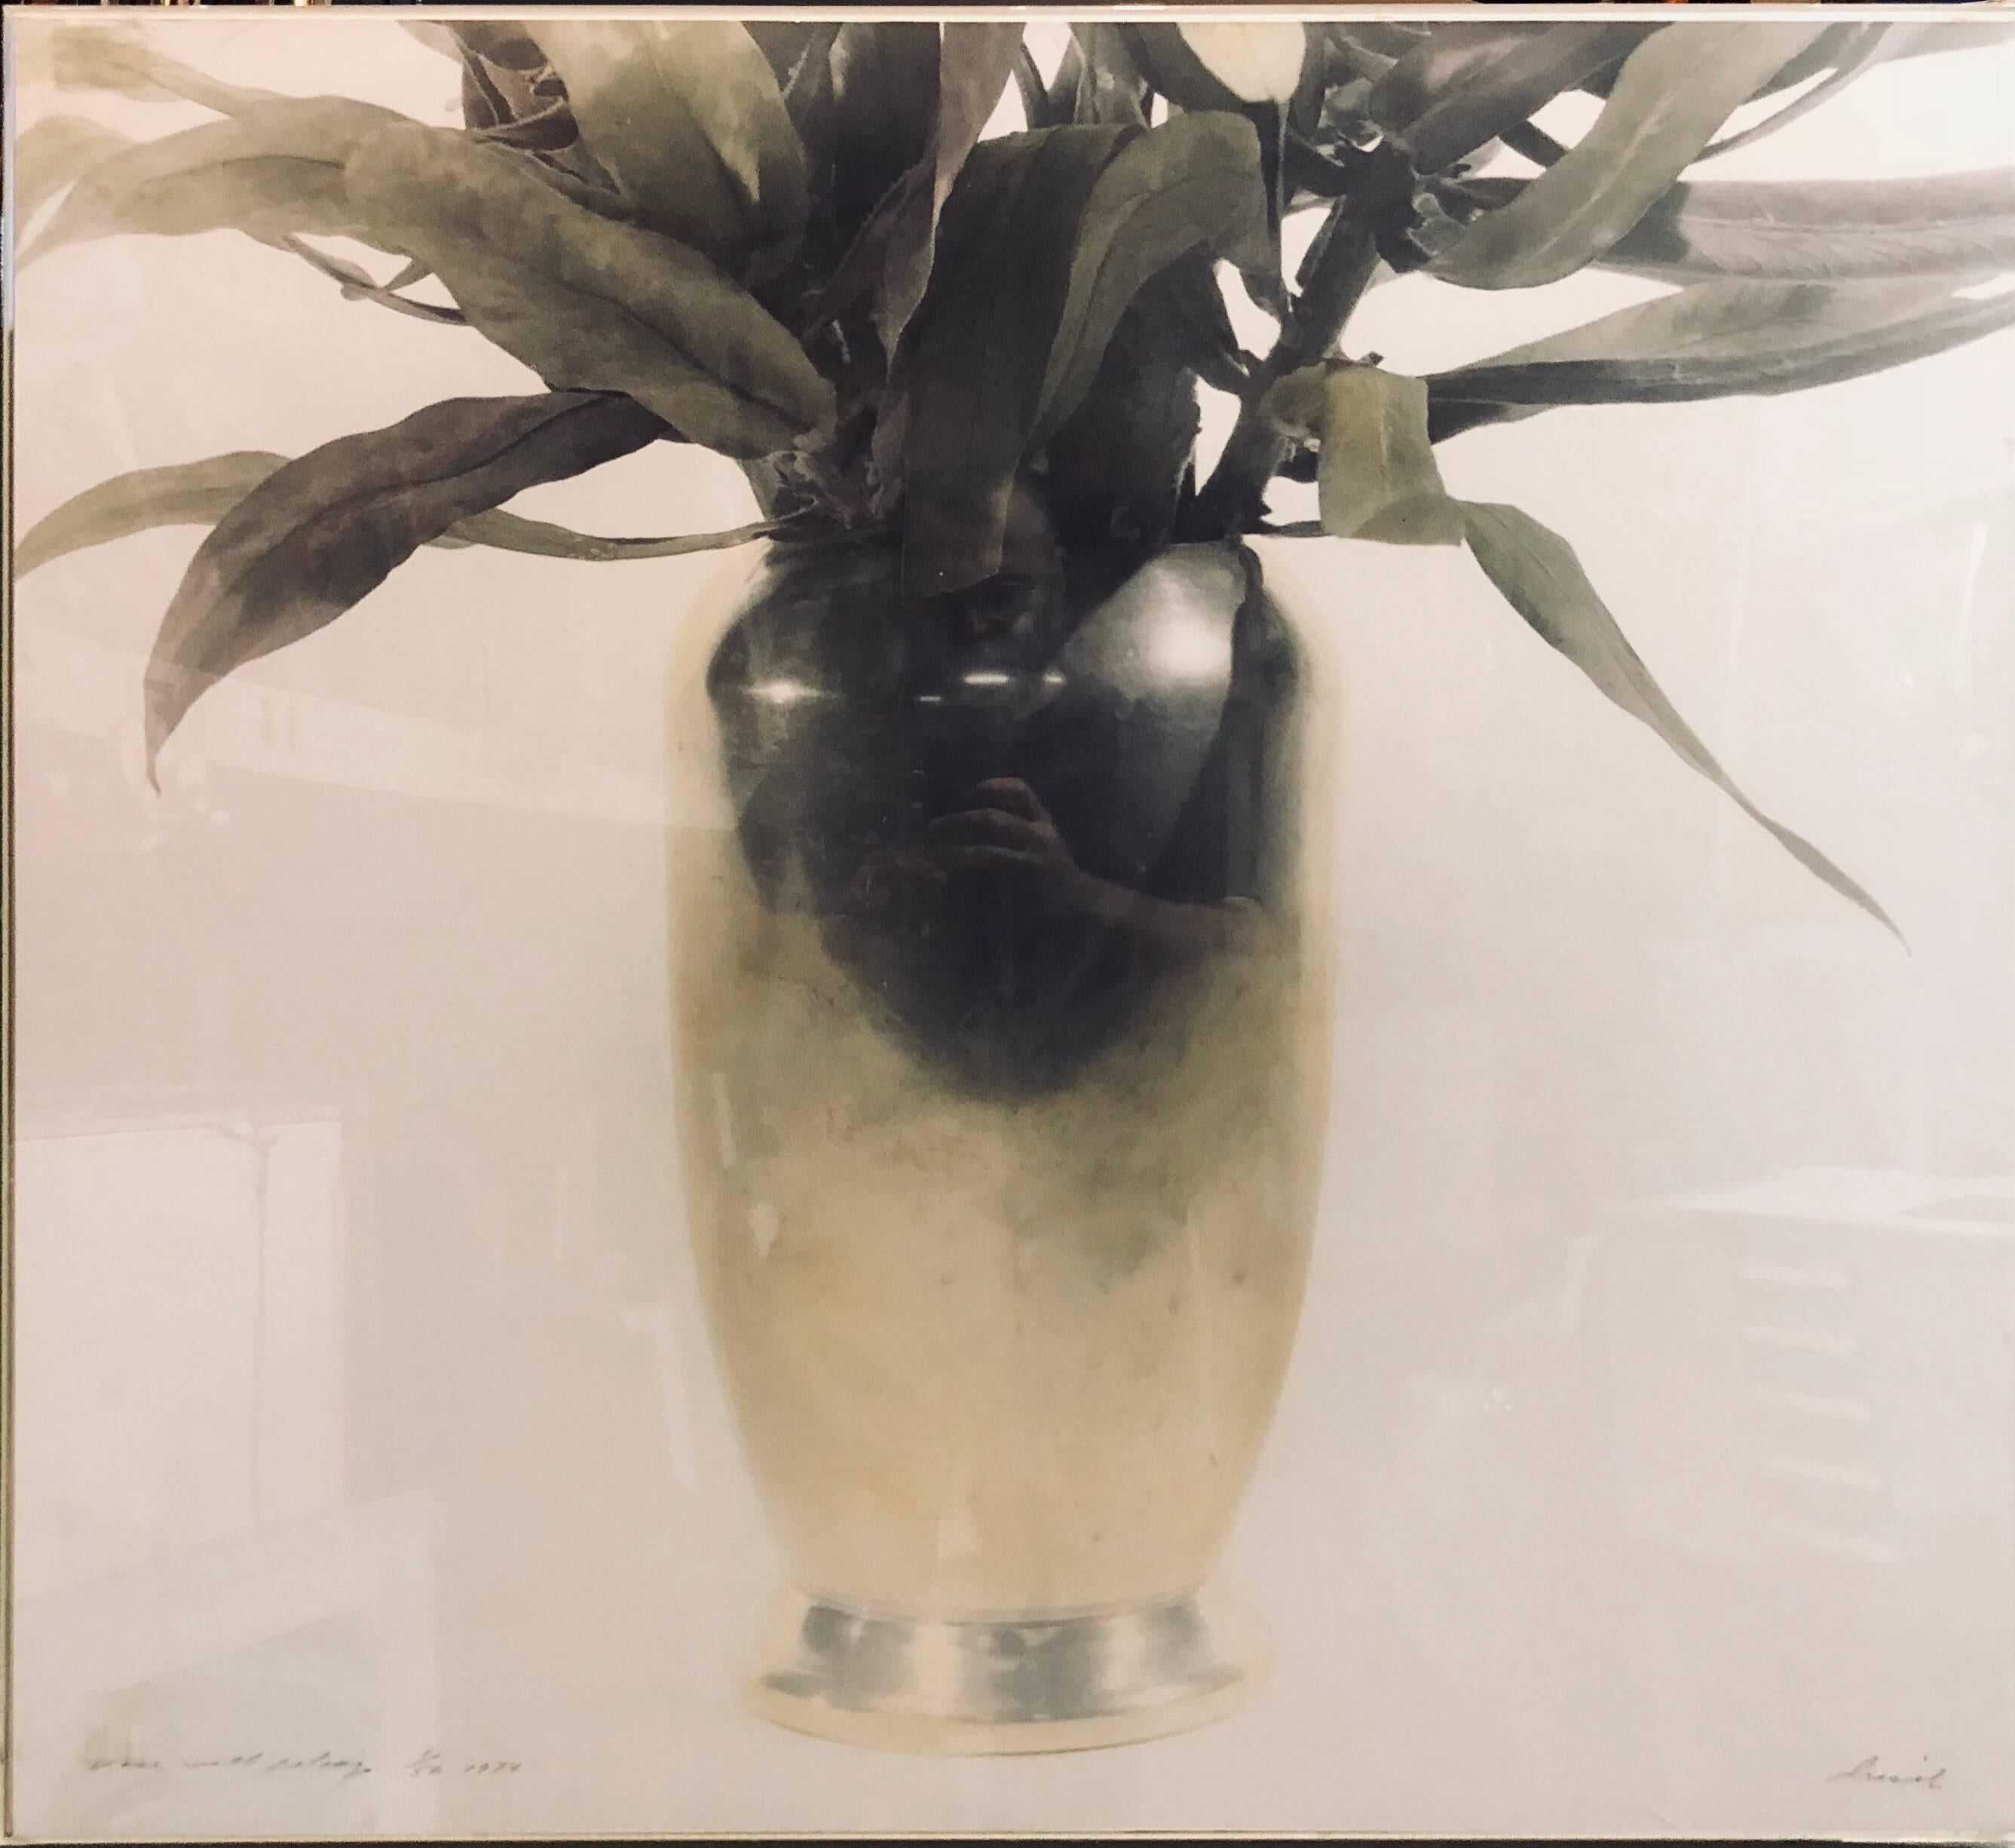 Vase mit Laub, hand getönte Fotografie. Vintage-Fotodruck